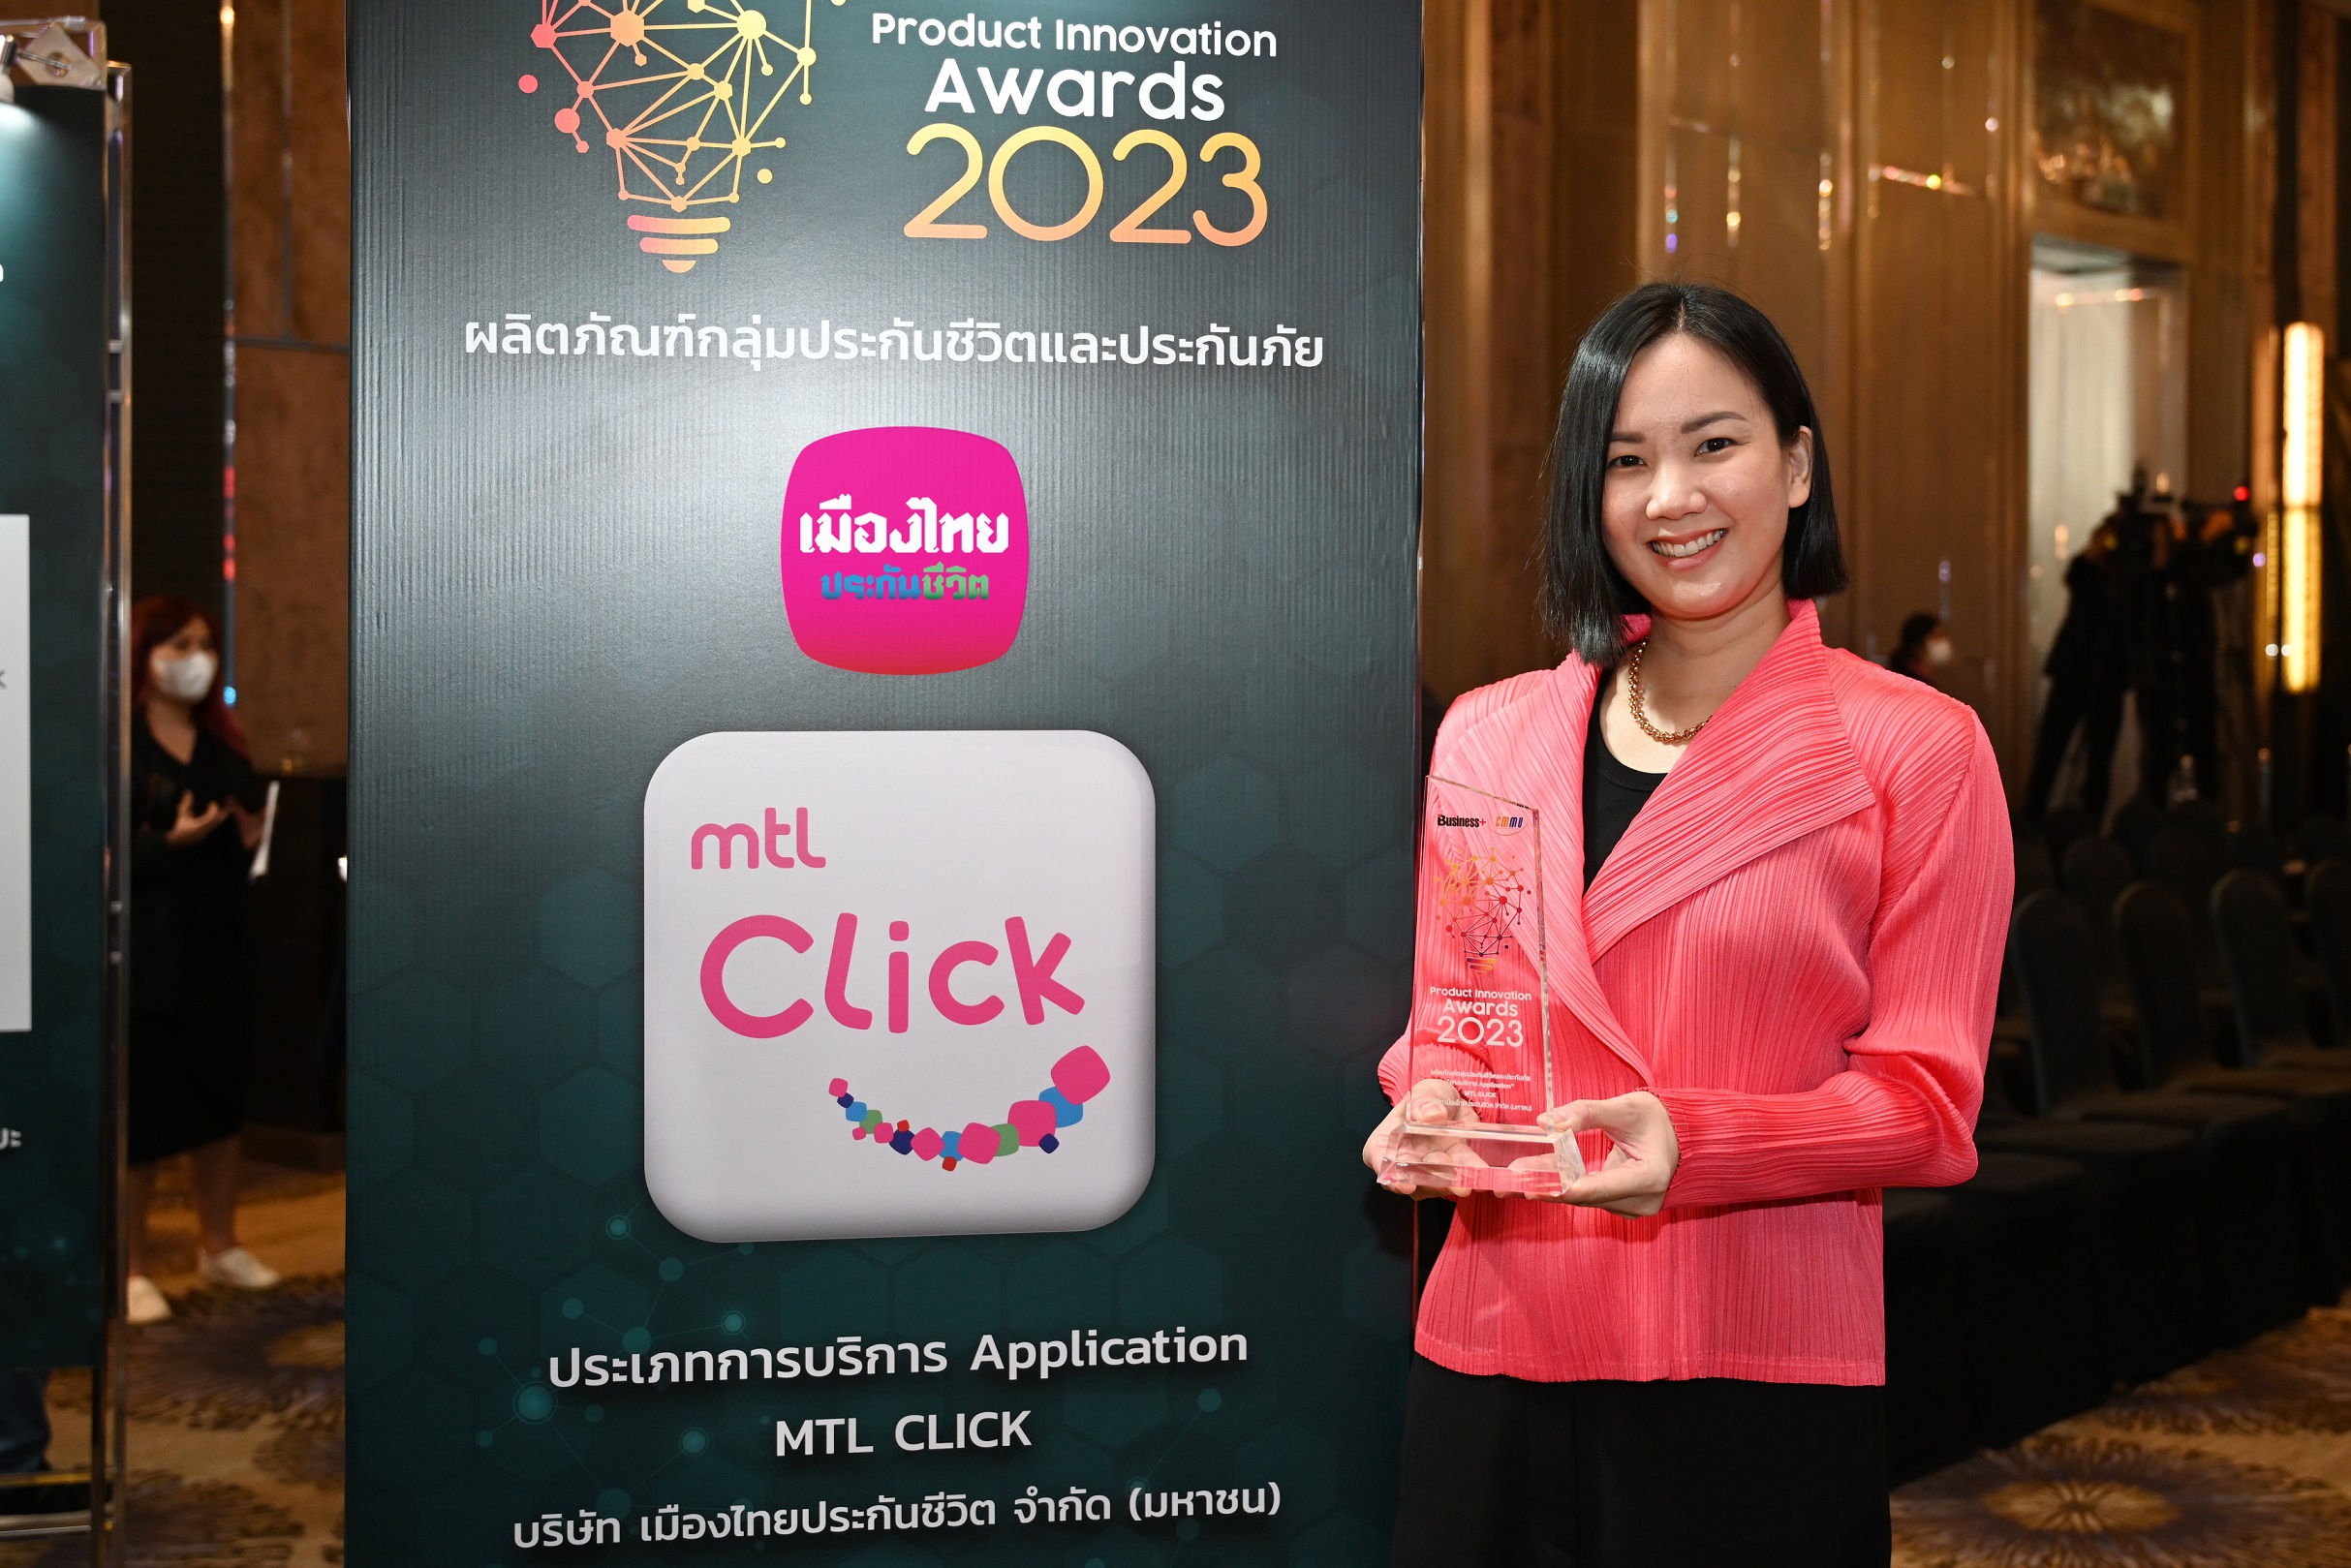 เมืองไทยประกันชีวิต คว้ารางวัล “สุดยอดนวัตกรรมสินค้าและบริการแห่งปี 2566” บริการแอปพลิเคชัน MTL Click จากนิตยสาร BUSINESS+ ร่วมกับวิทยาลัยการจัดการ มหาวิทยาลัยมหิดล